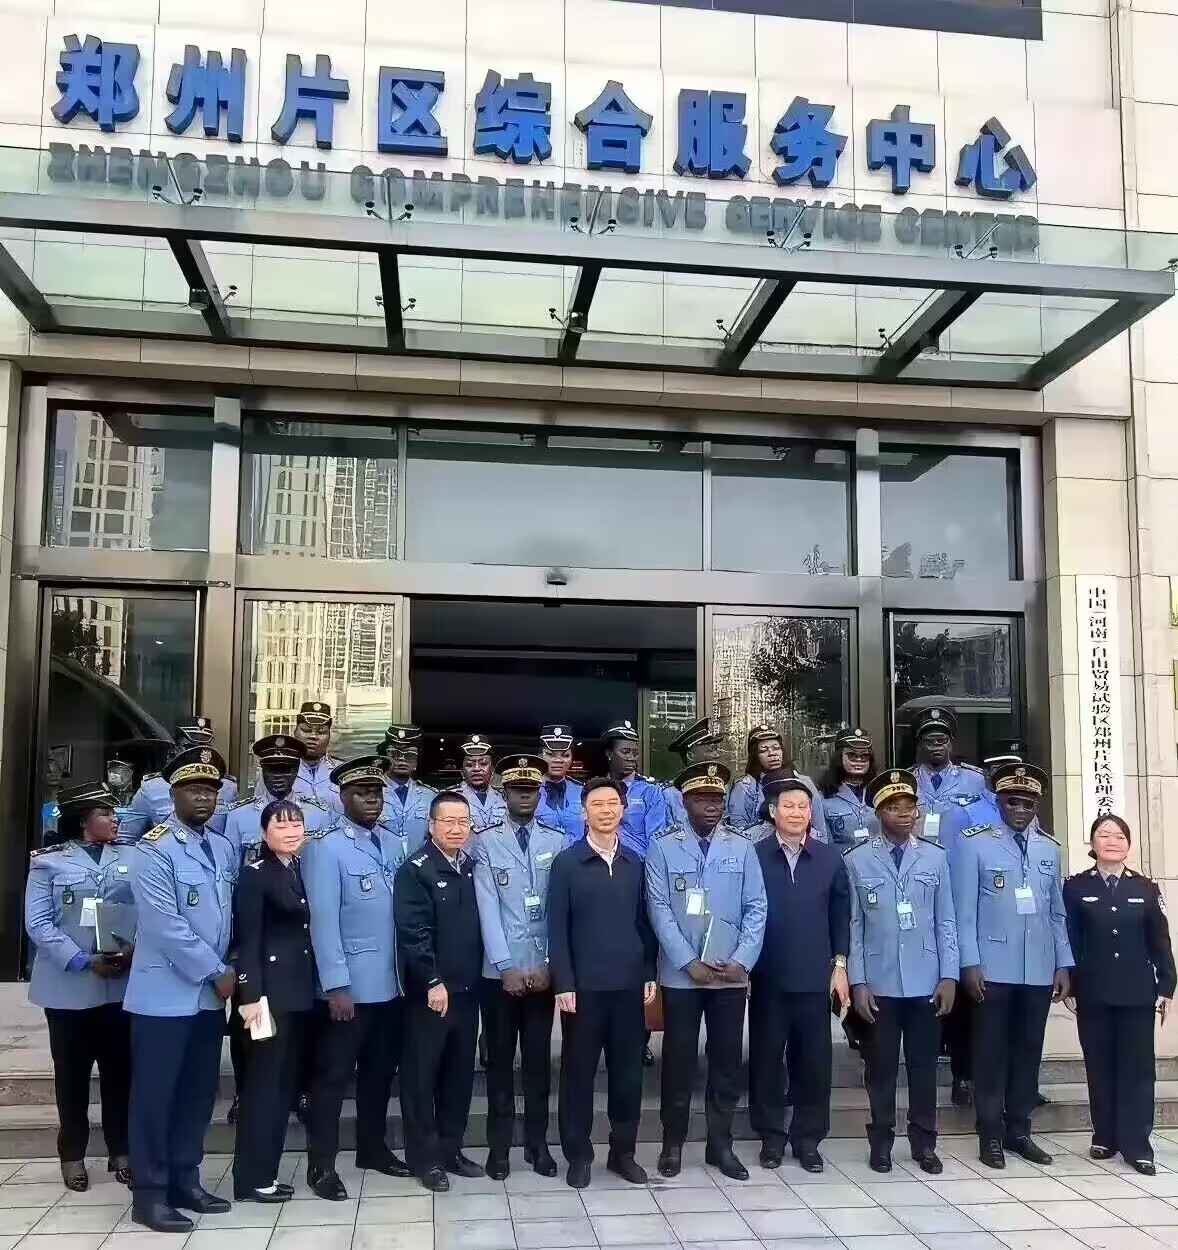 郑州片区综合服务中心，引进黑人工作就业。。。